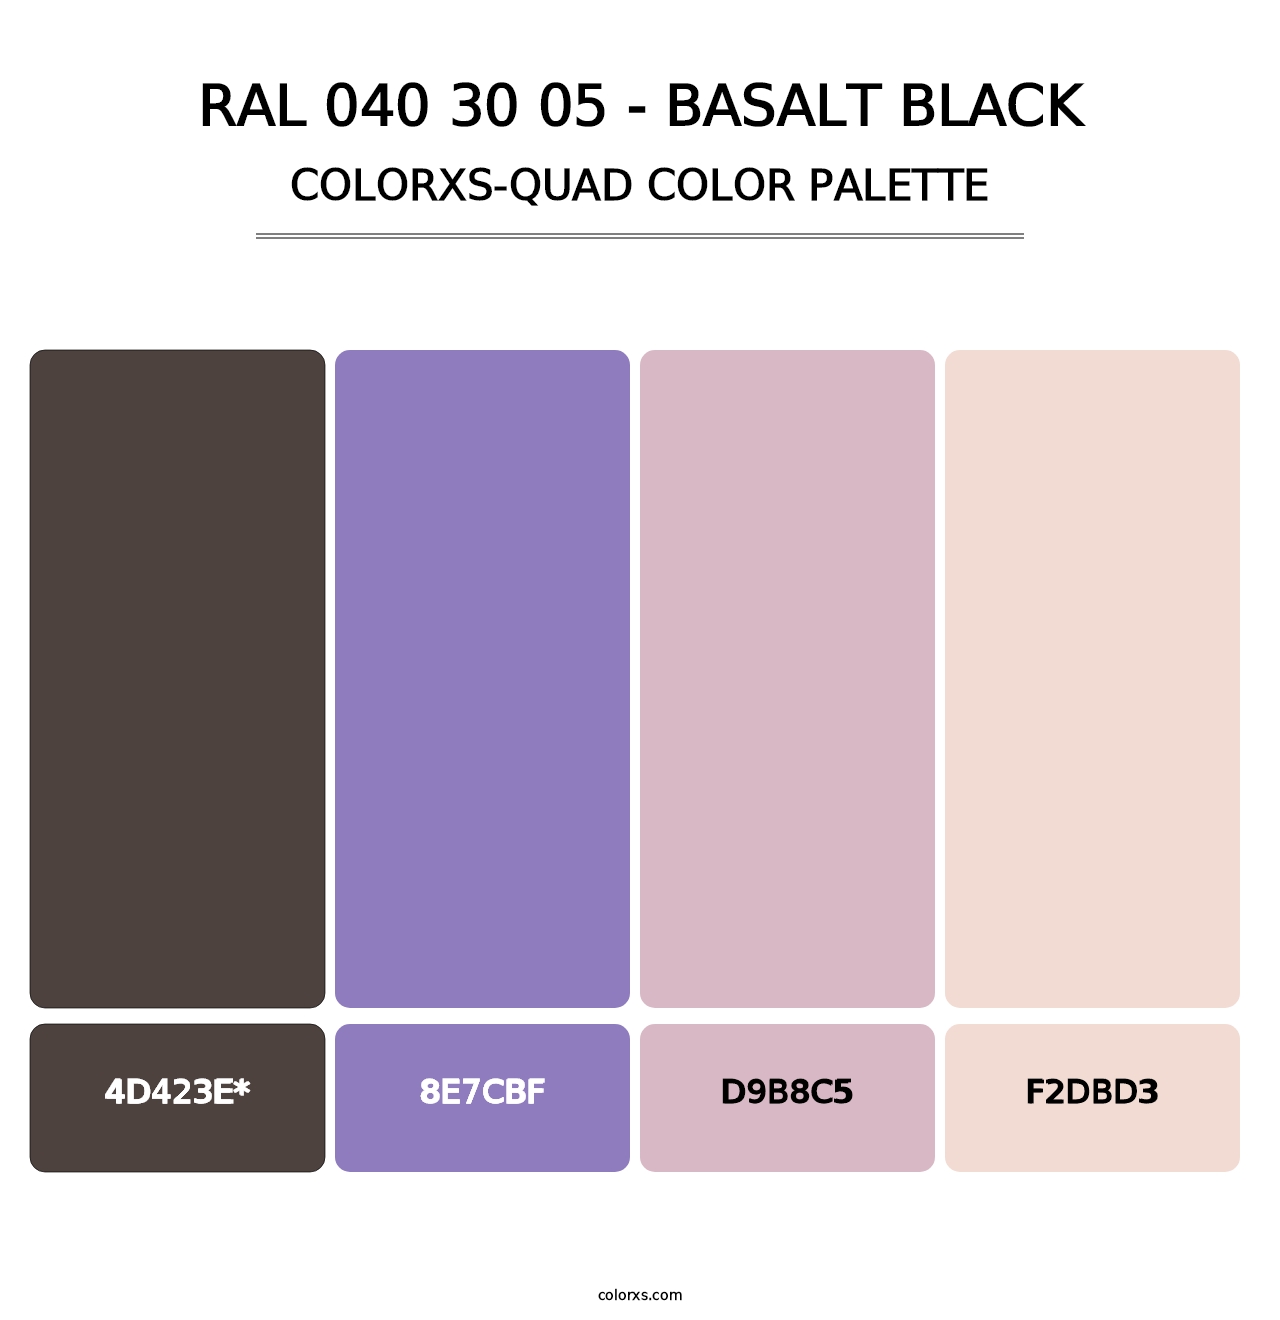 RAL 040 30 05 - Basalt Black - Colorxs Quad Palette